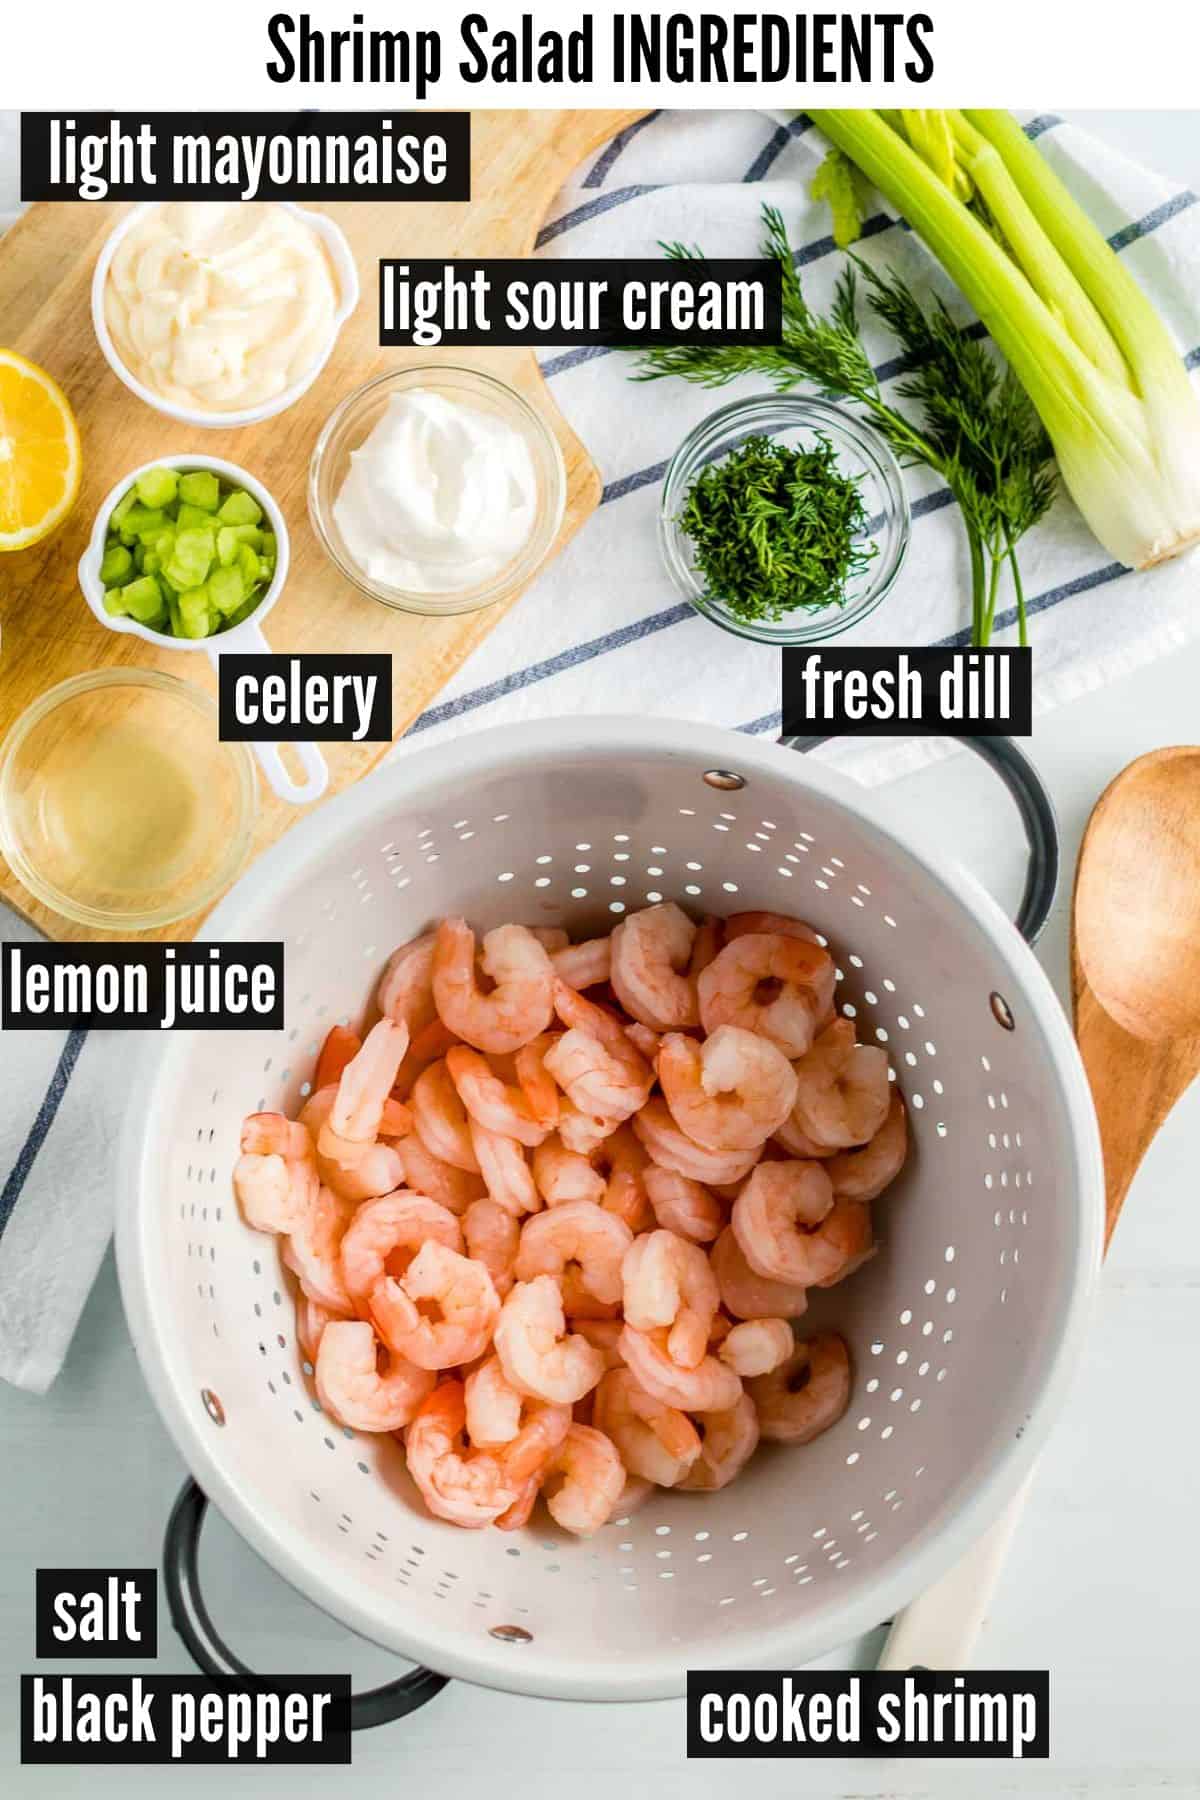 shrimp salad labelled ingredients.